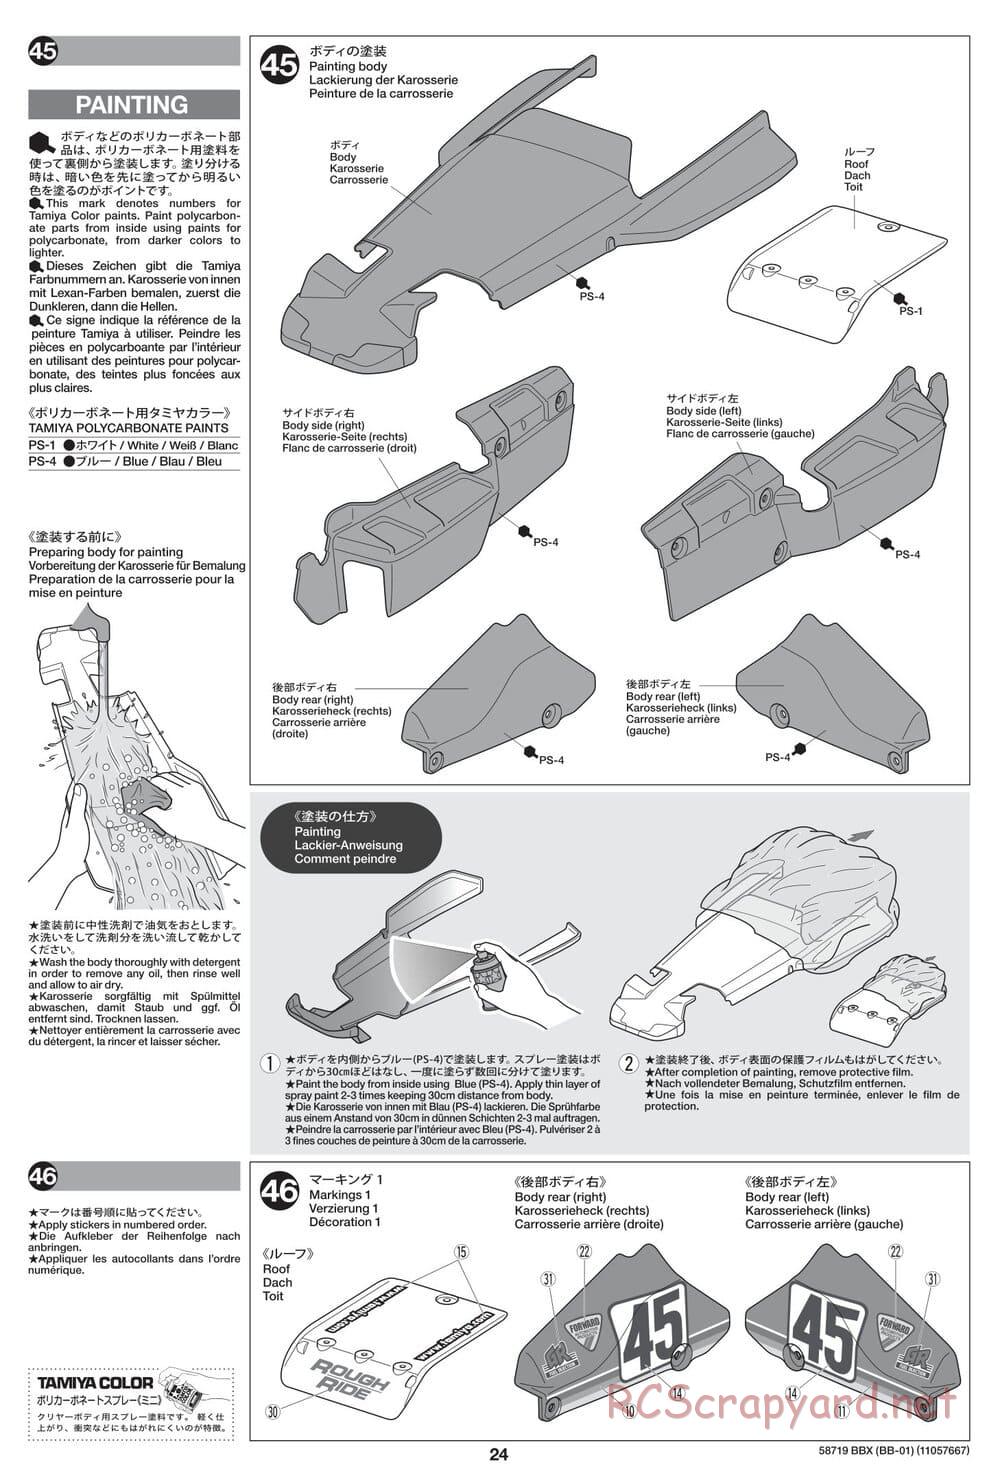 Tamiya - BBX - BB-01 Chassis - Manual - Page 24